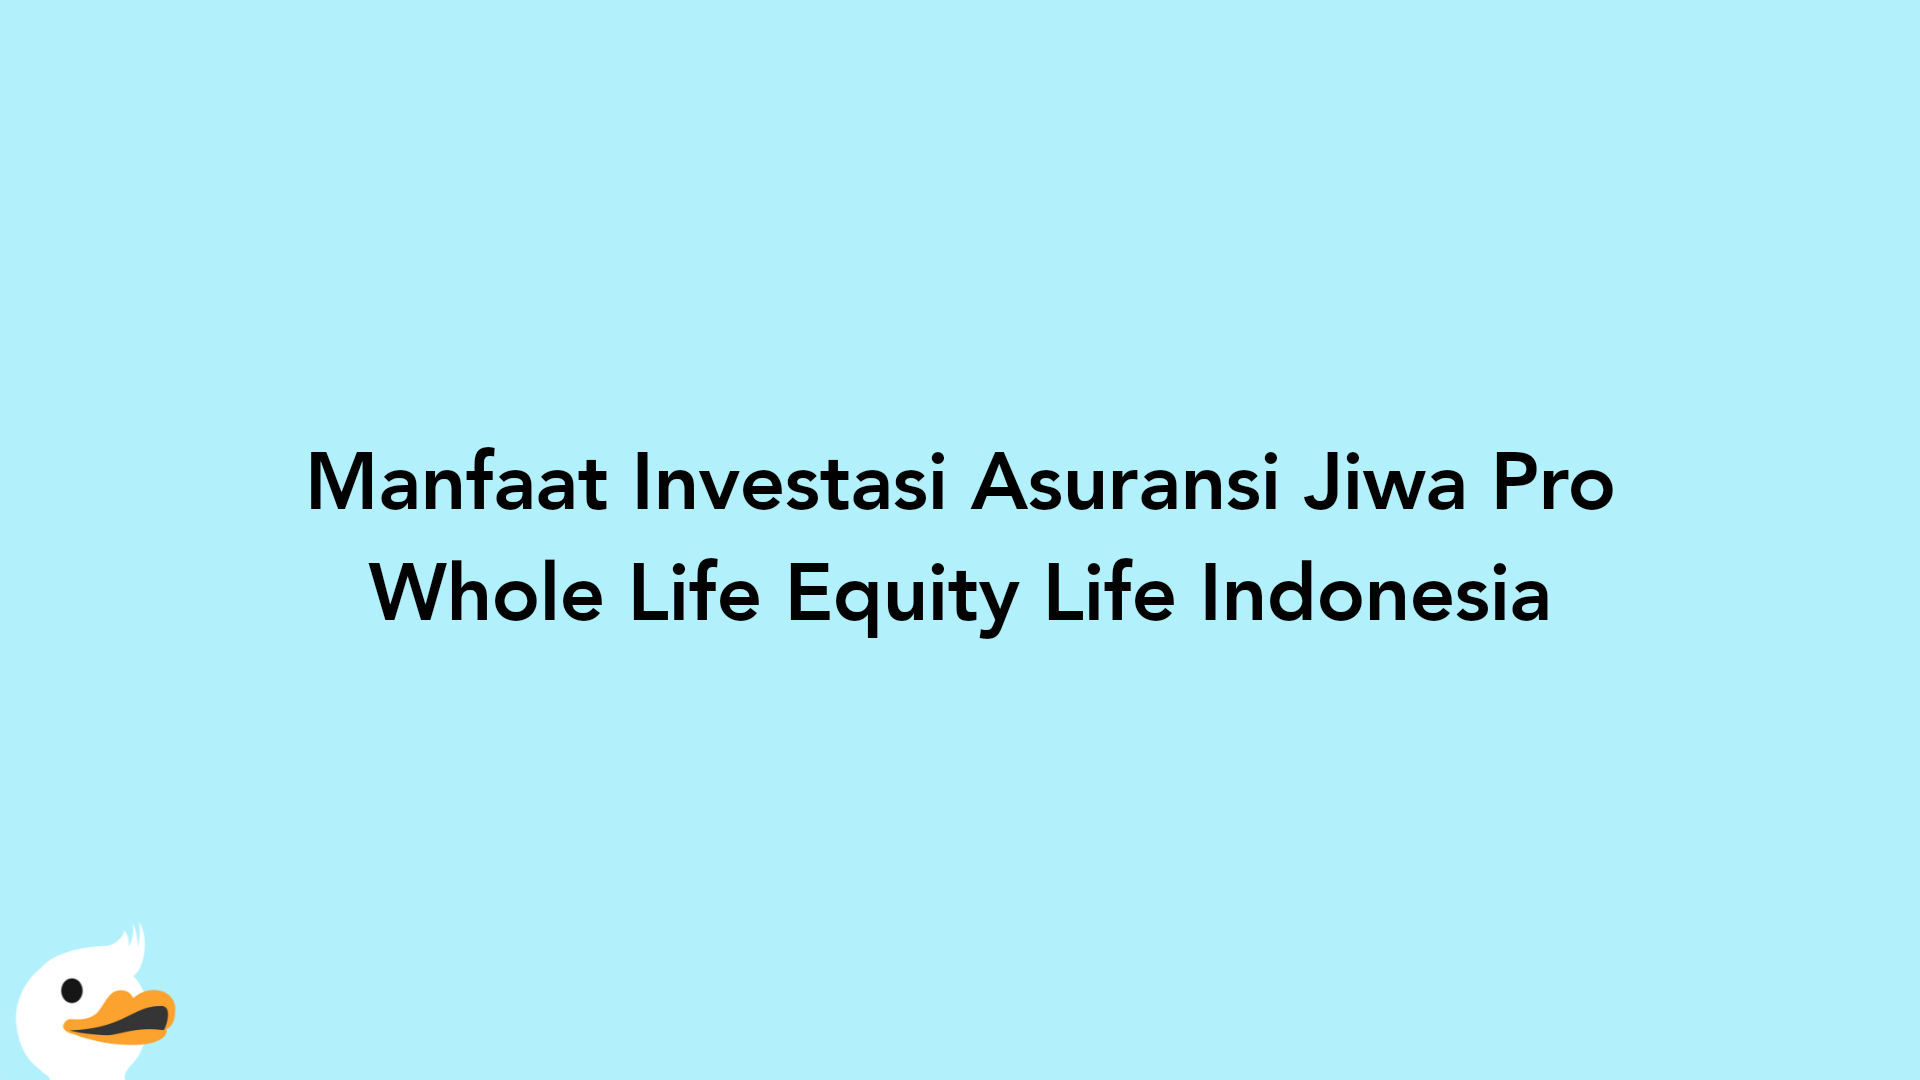 Manfaat Investasi Asuransi Jiwa Pro Whole Life Equity Life Indonesia